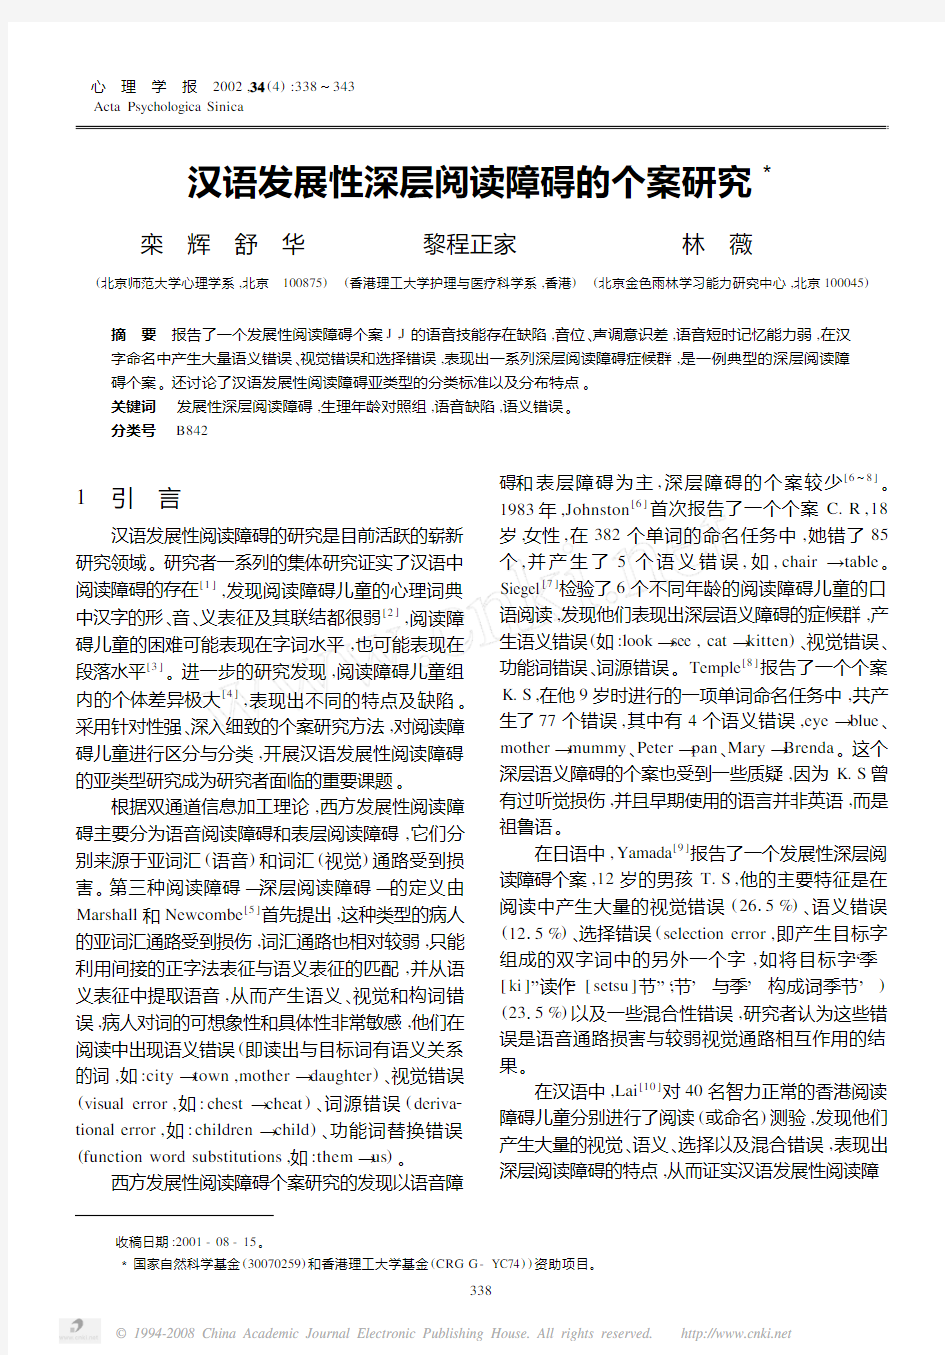 汉语发展性深层阅读障碍的个案研究